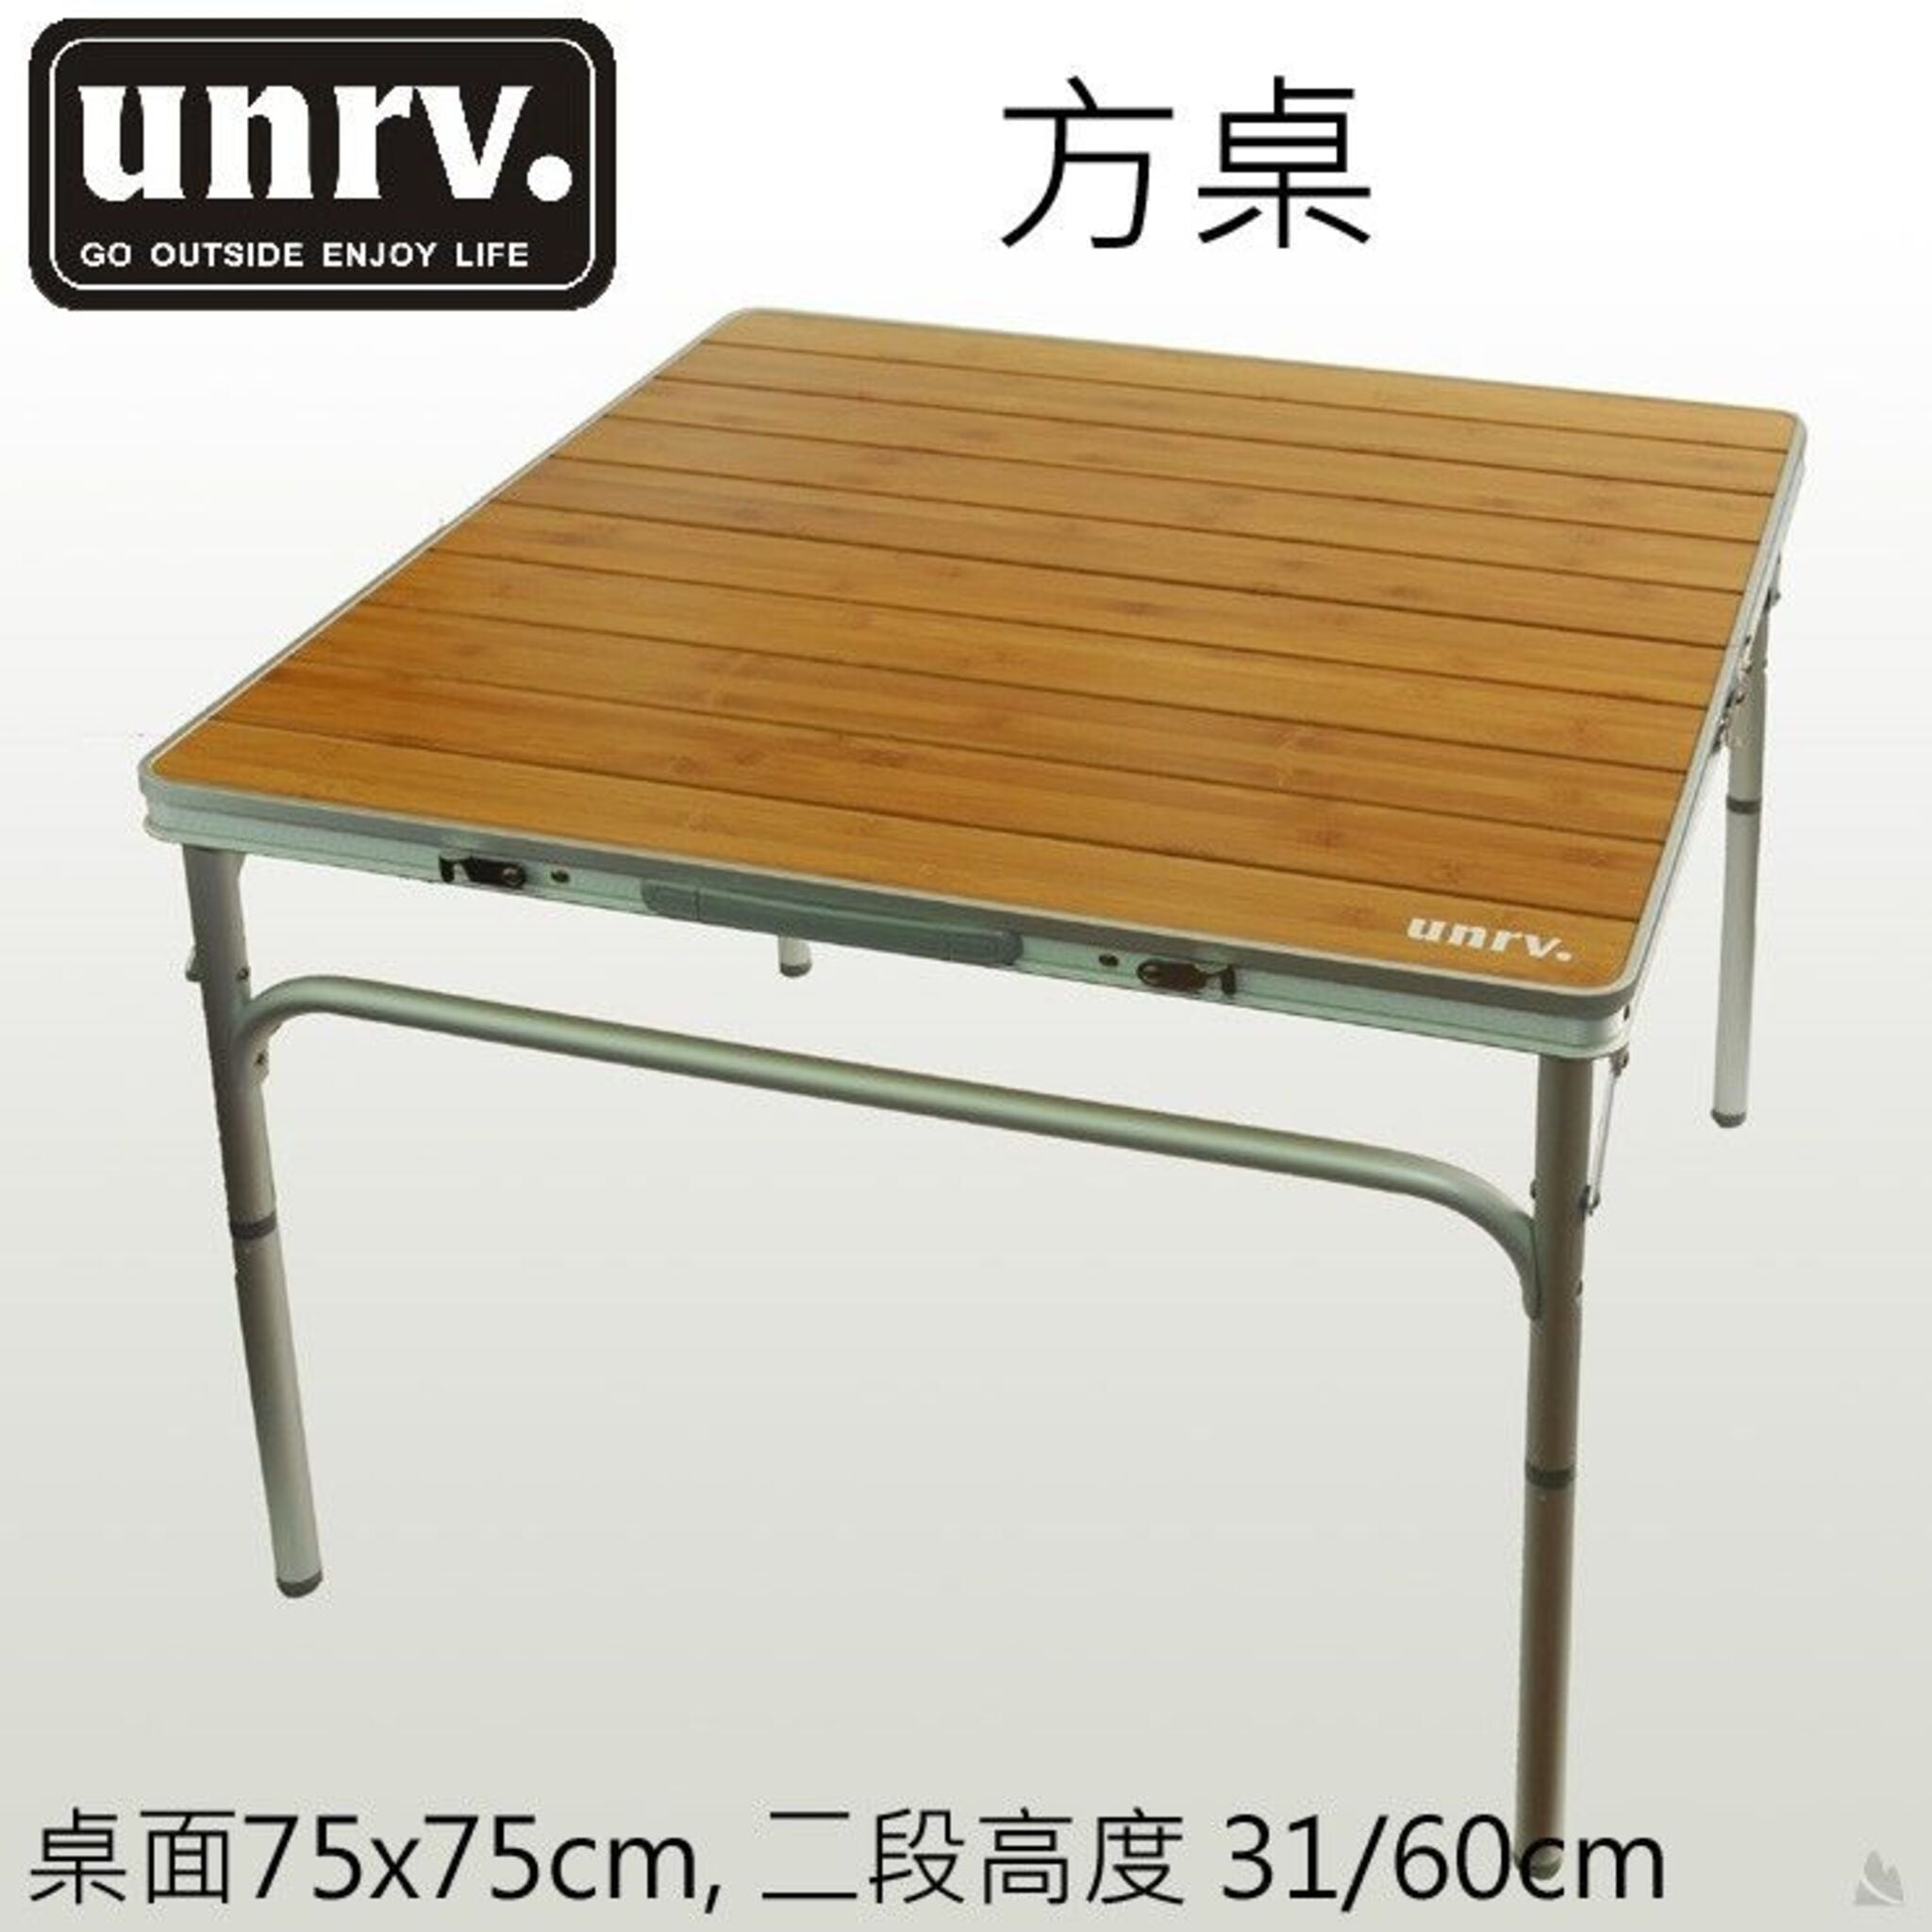 UNRV 方桌 75x75cm